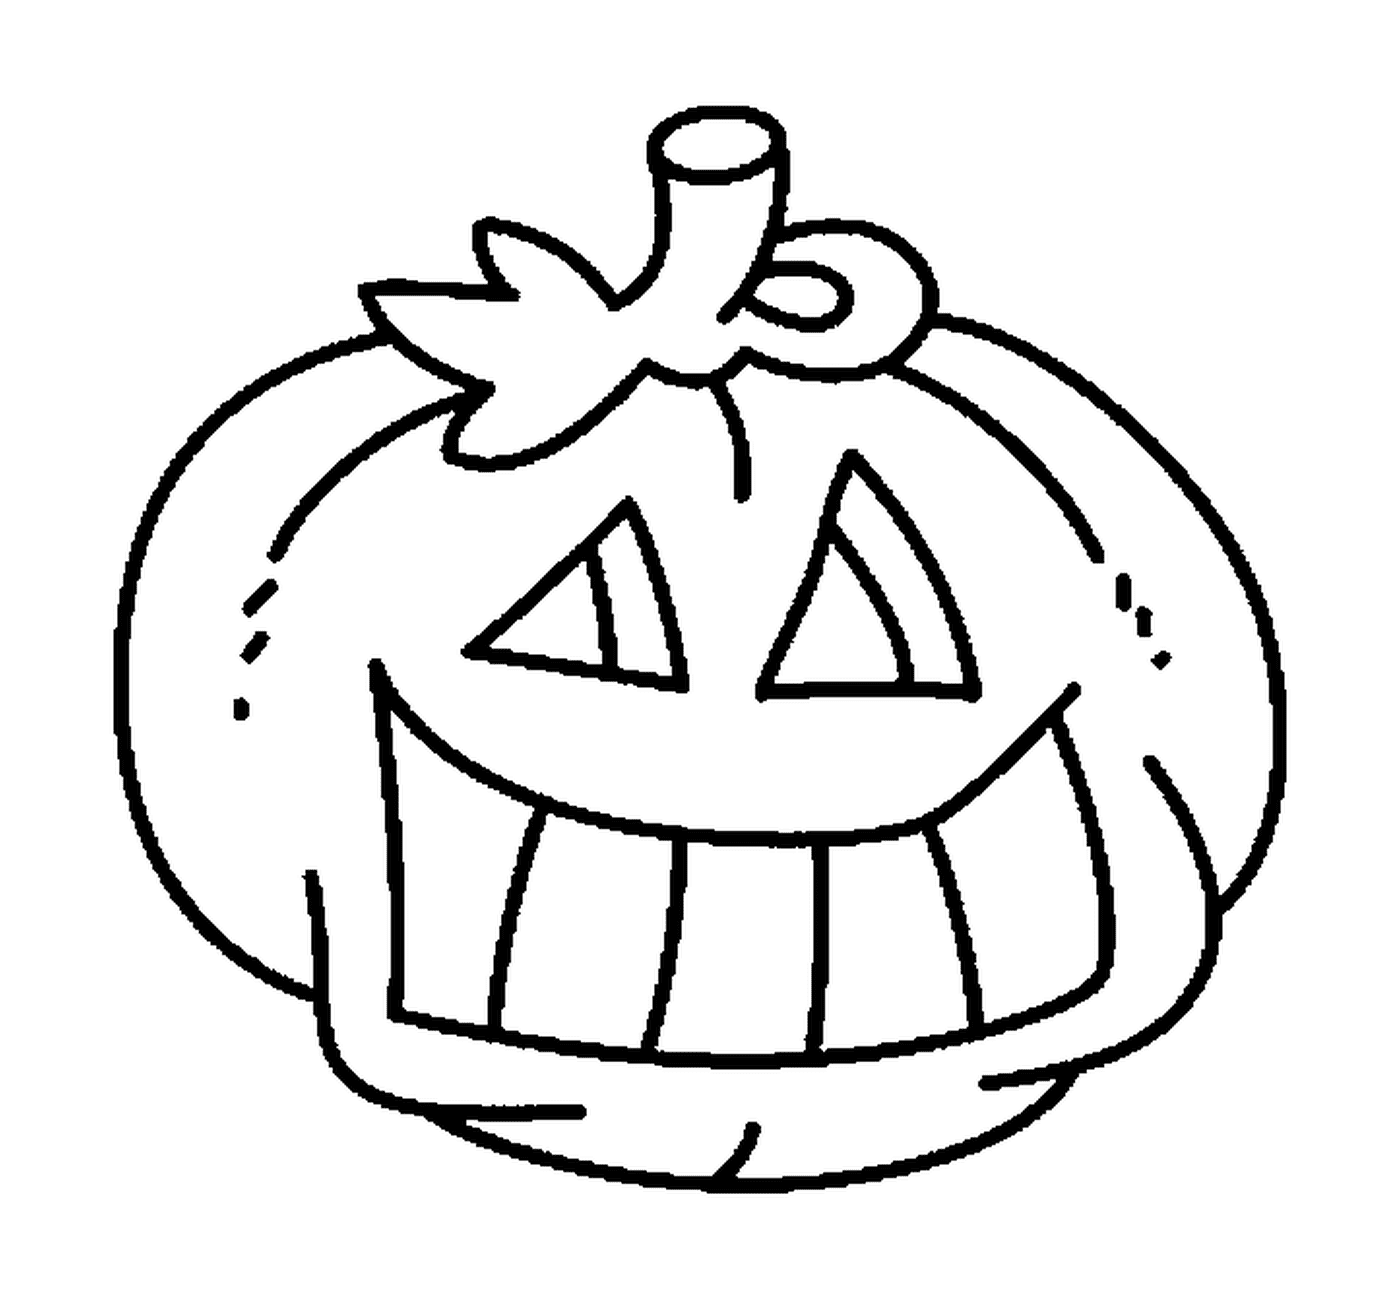  Halloween pumpkin to color 